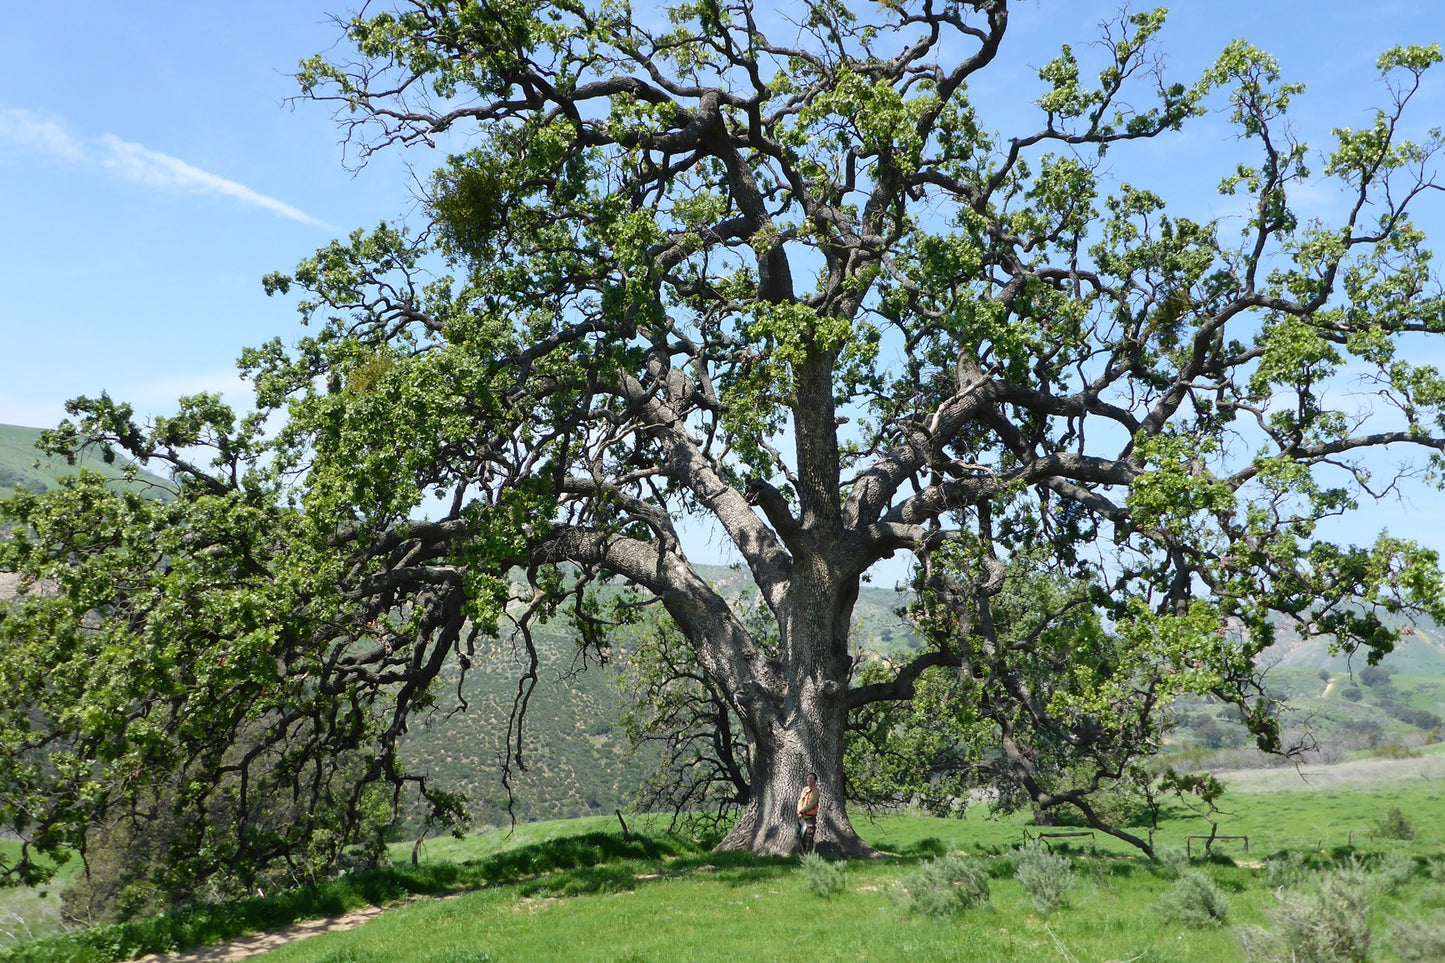 Coast Live Oak (Quercus agrifolia)